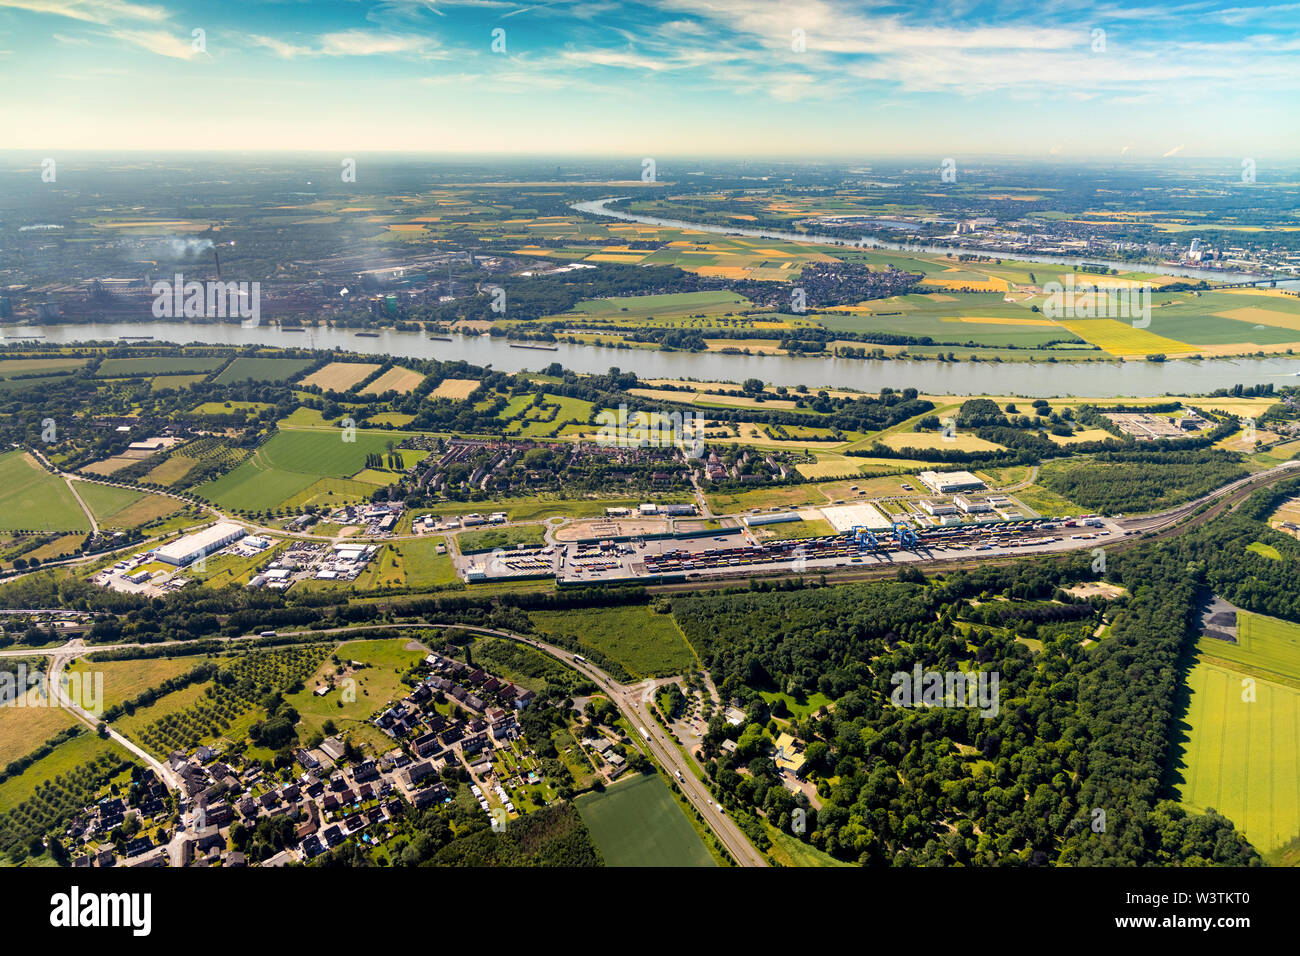 Fotografía aérea de la ubicación logística Hohenbudberg Logport Hohenbudberg Logport III, perteneciente al puerto de Duisburg, en Duisburg-Hoh Duisport Foto de stock